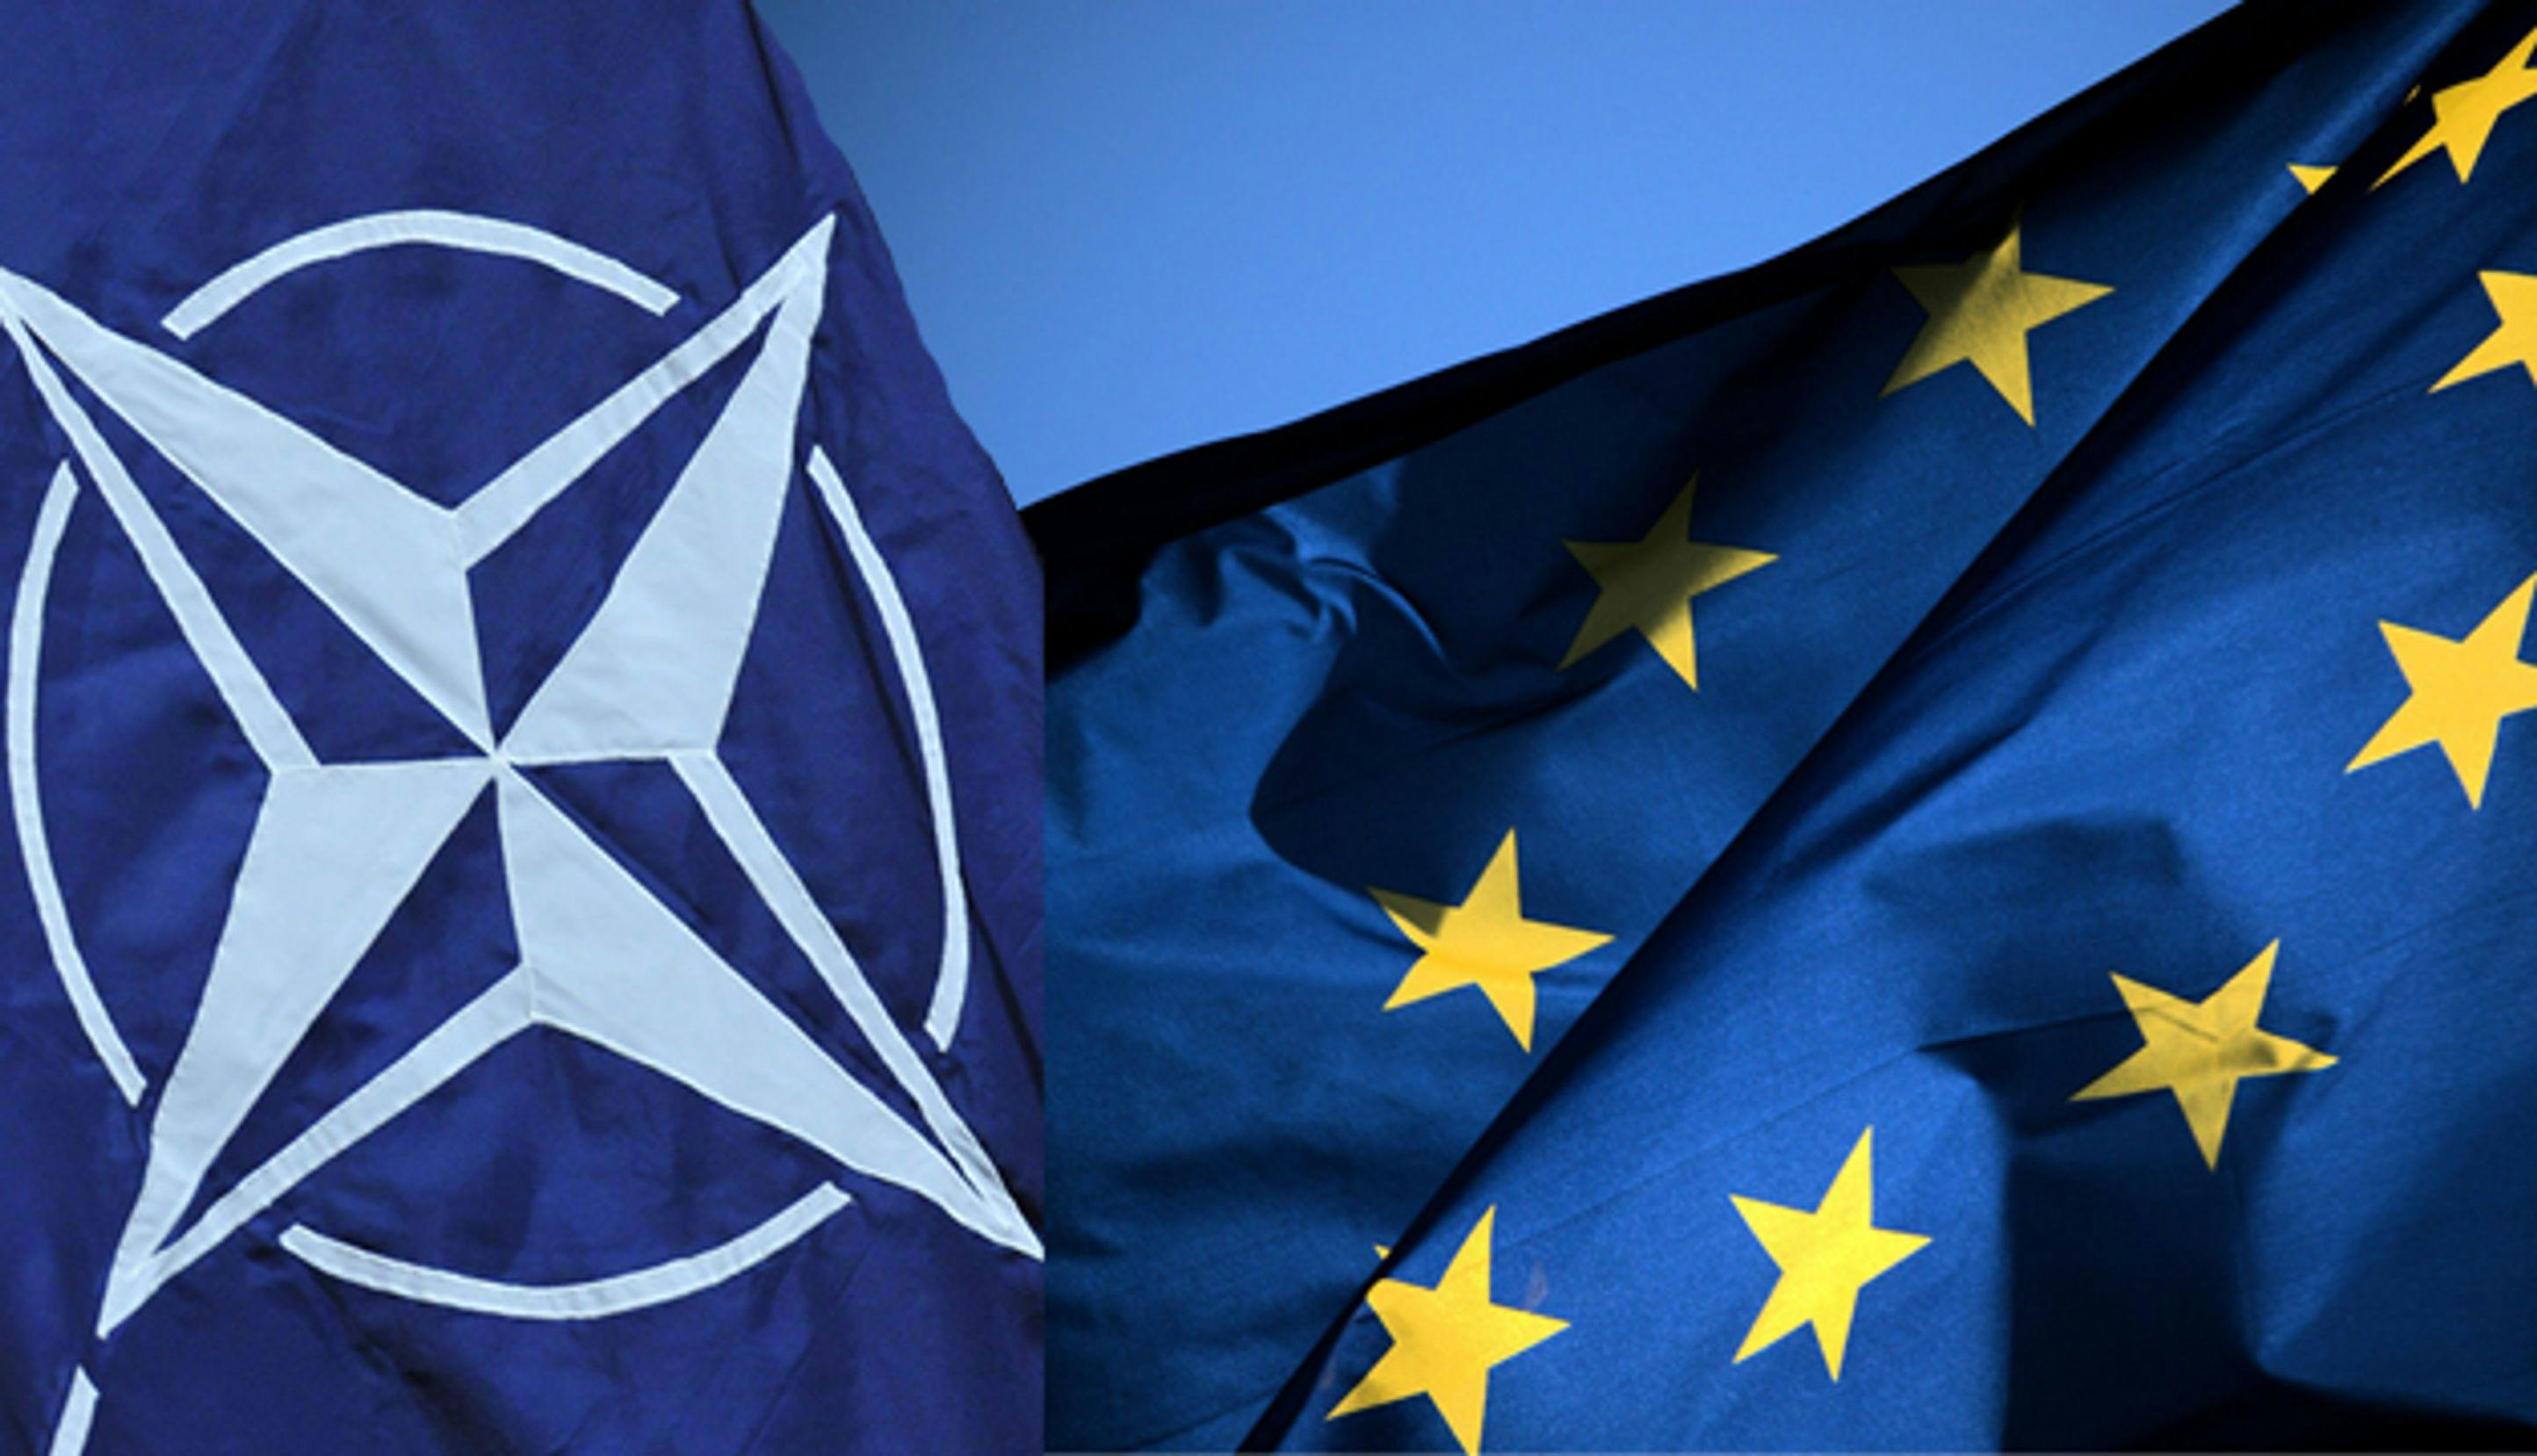 NATO-flagg og EU-flagg som vaier i vinden.